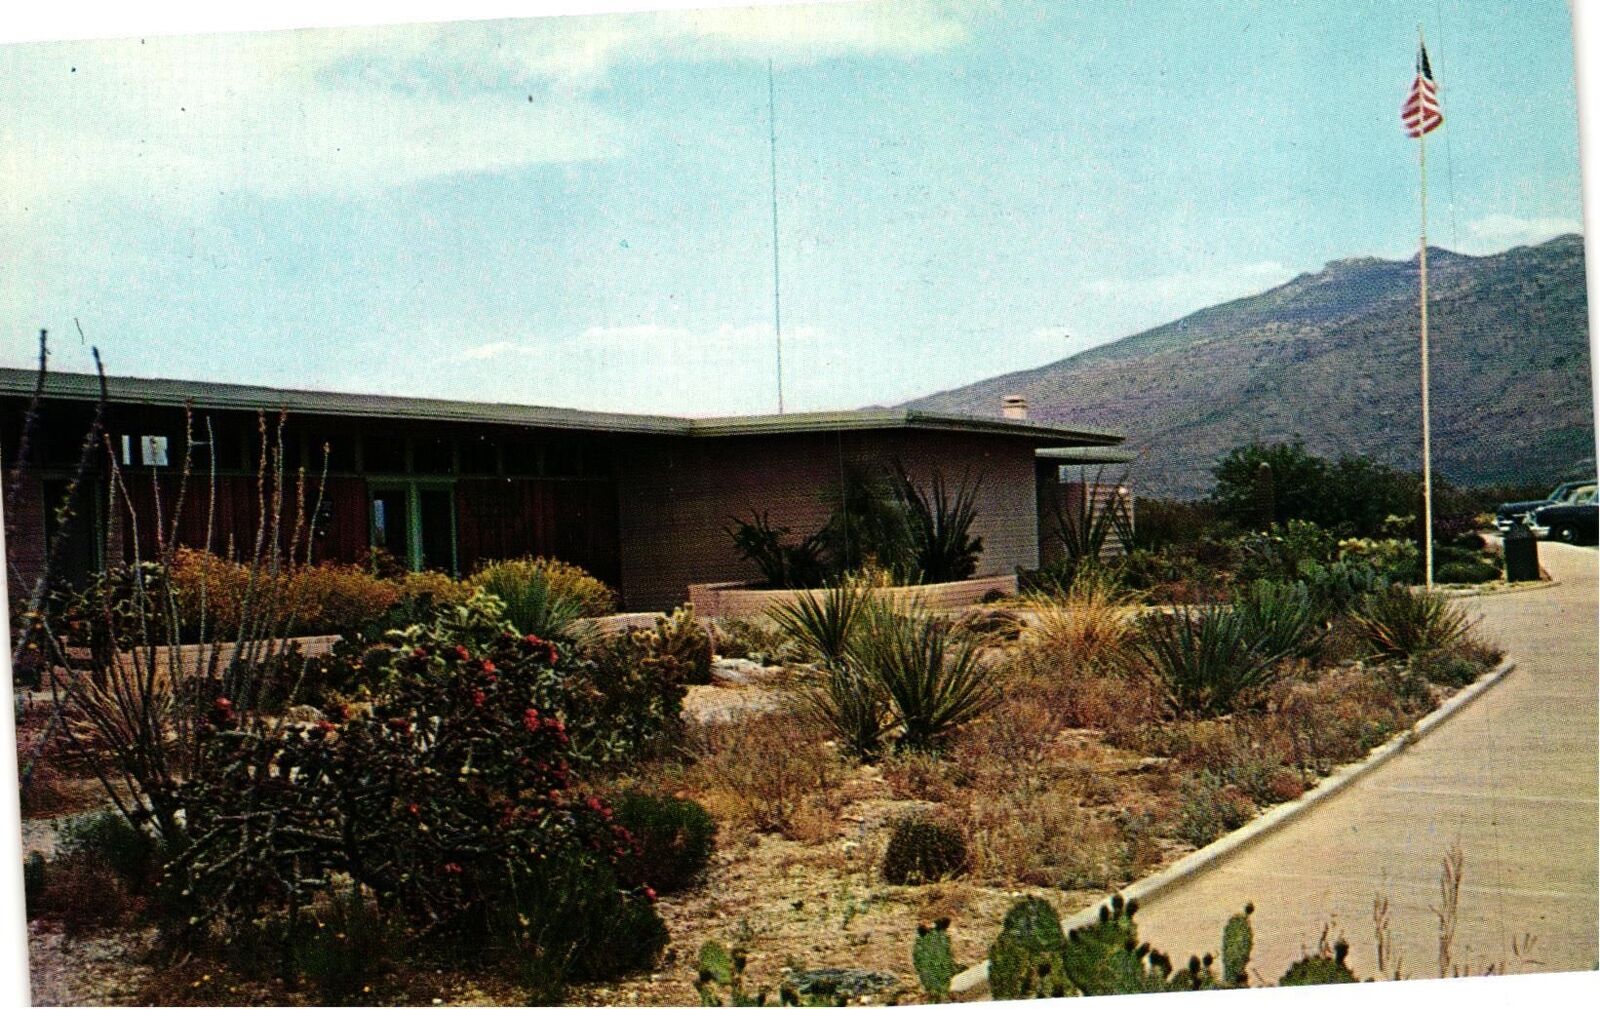 Vintage Postcard- VISTORS CENTER, SAGUARO NATIONAL MONUMENT, TUCSON, AZ. 1960s